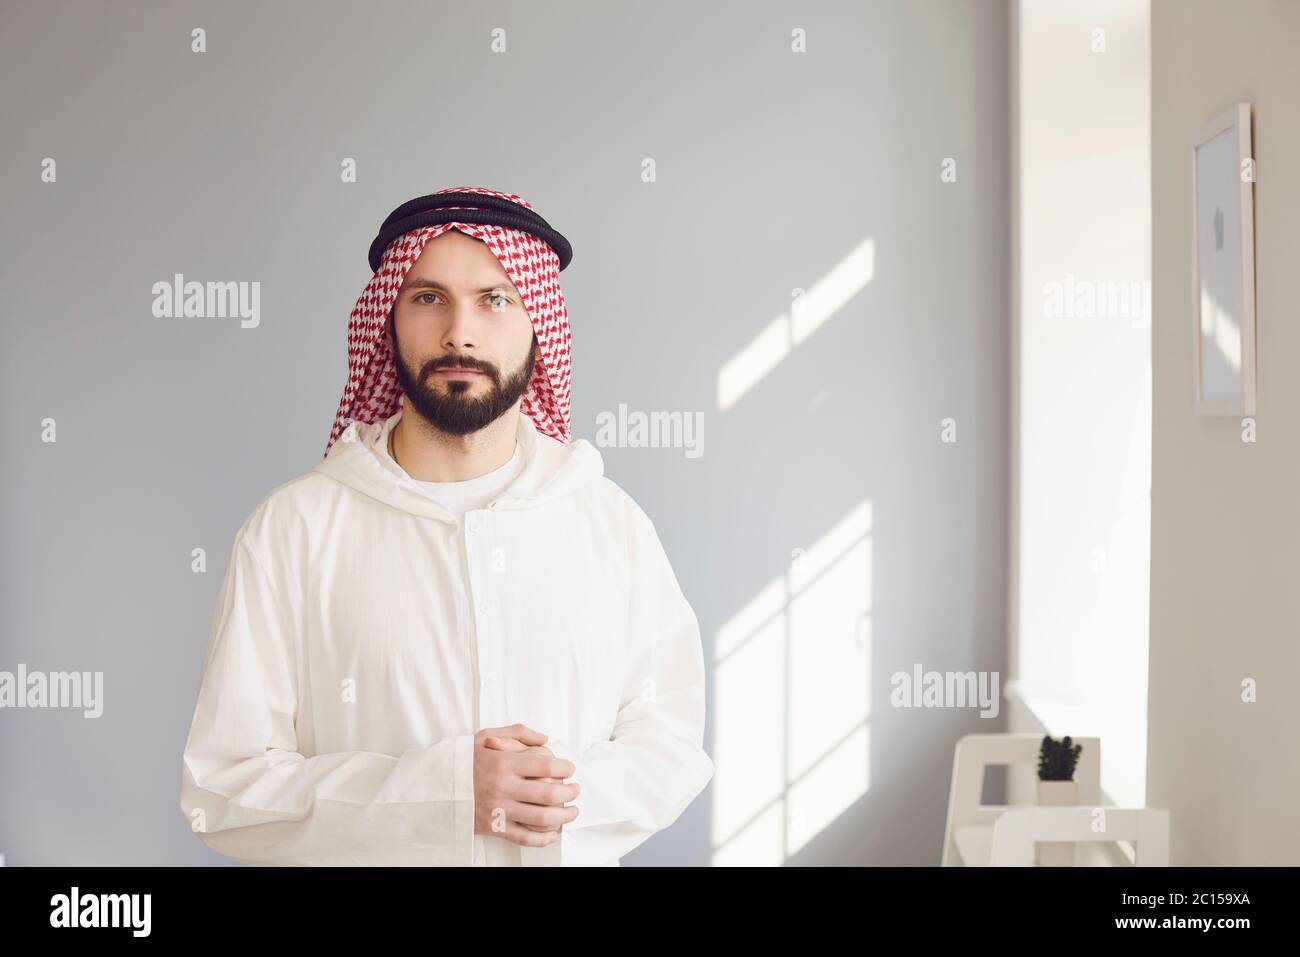 Arabischer männlicher Geschäftsmann lächelndes Porträt, das auf grauem Hintergrund steht Stockfoto